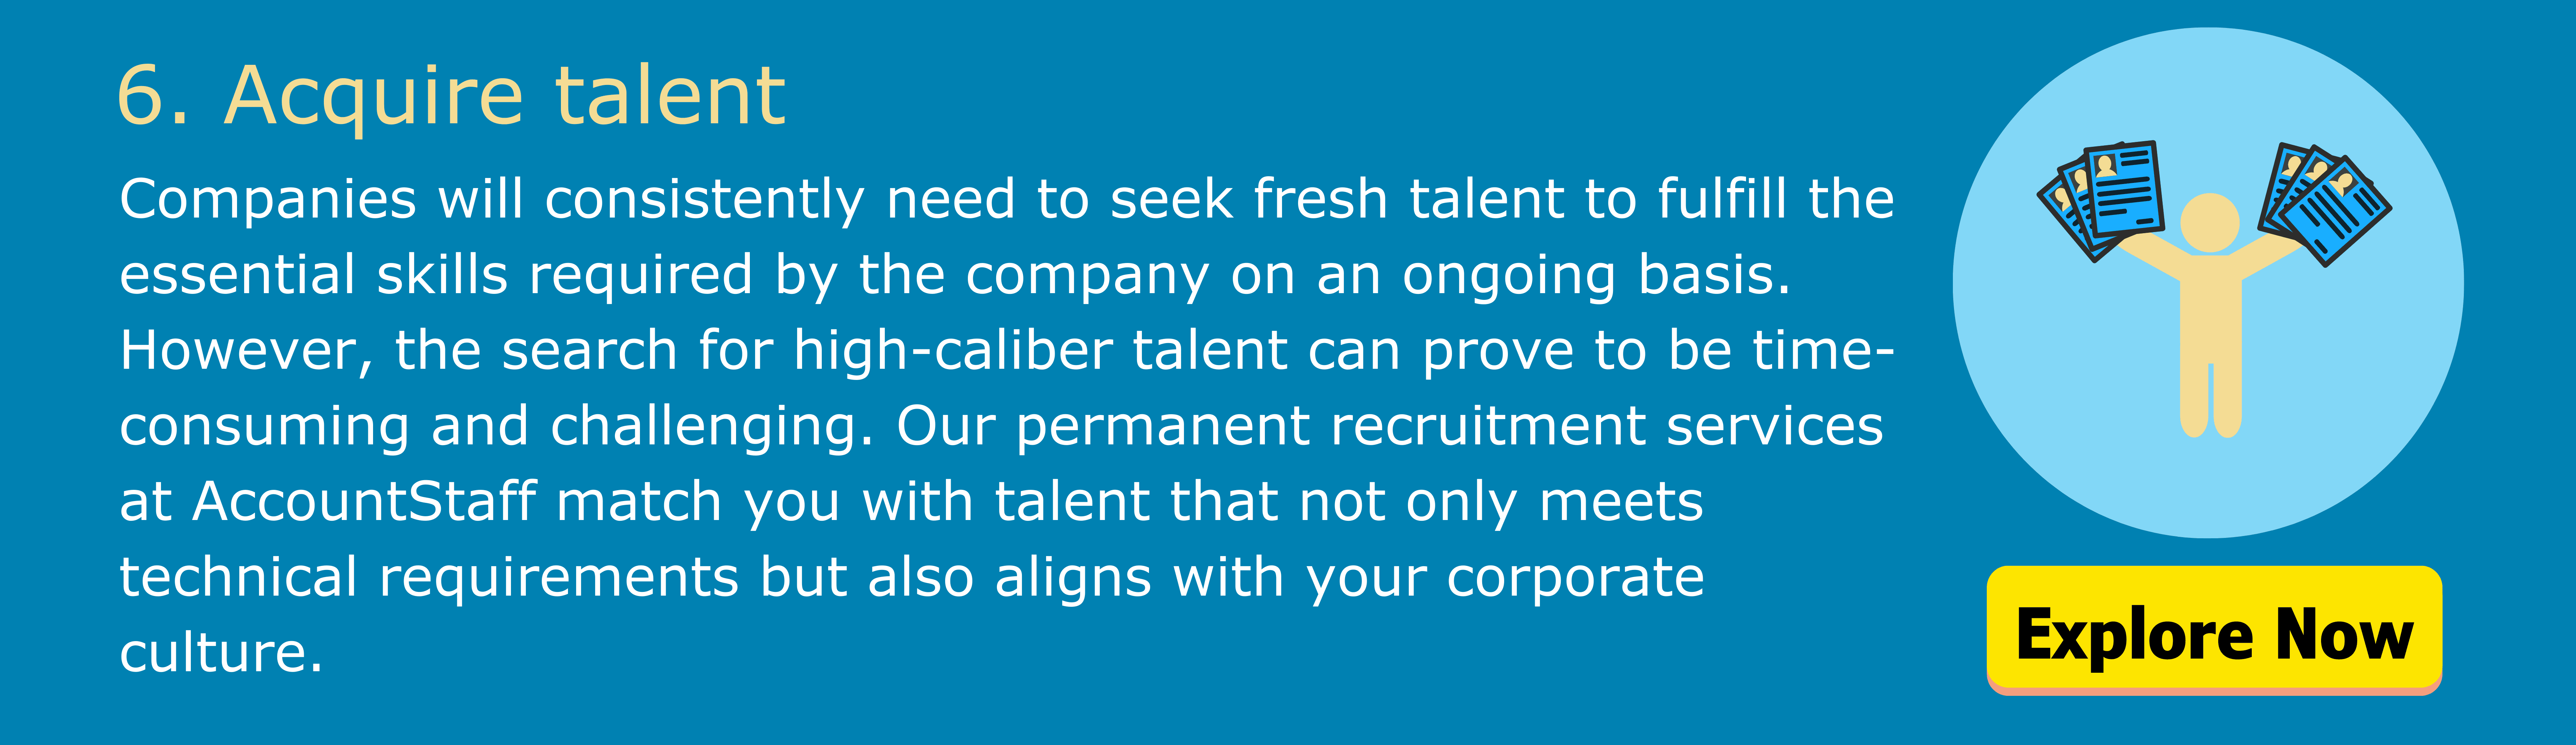 6.	Acquire talent